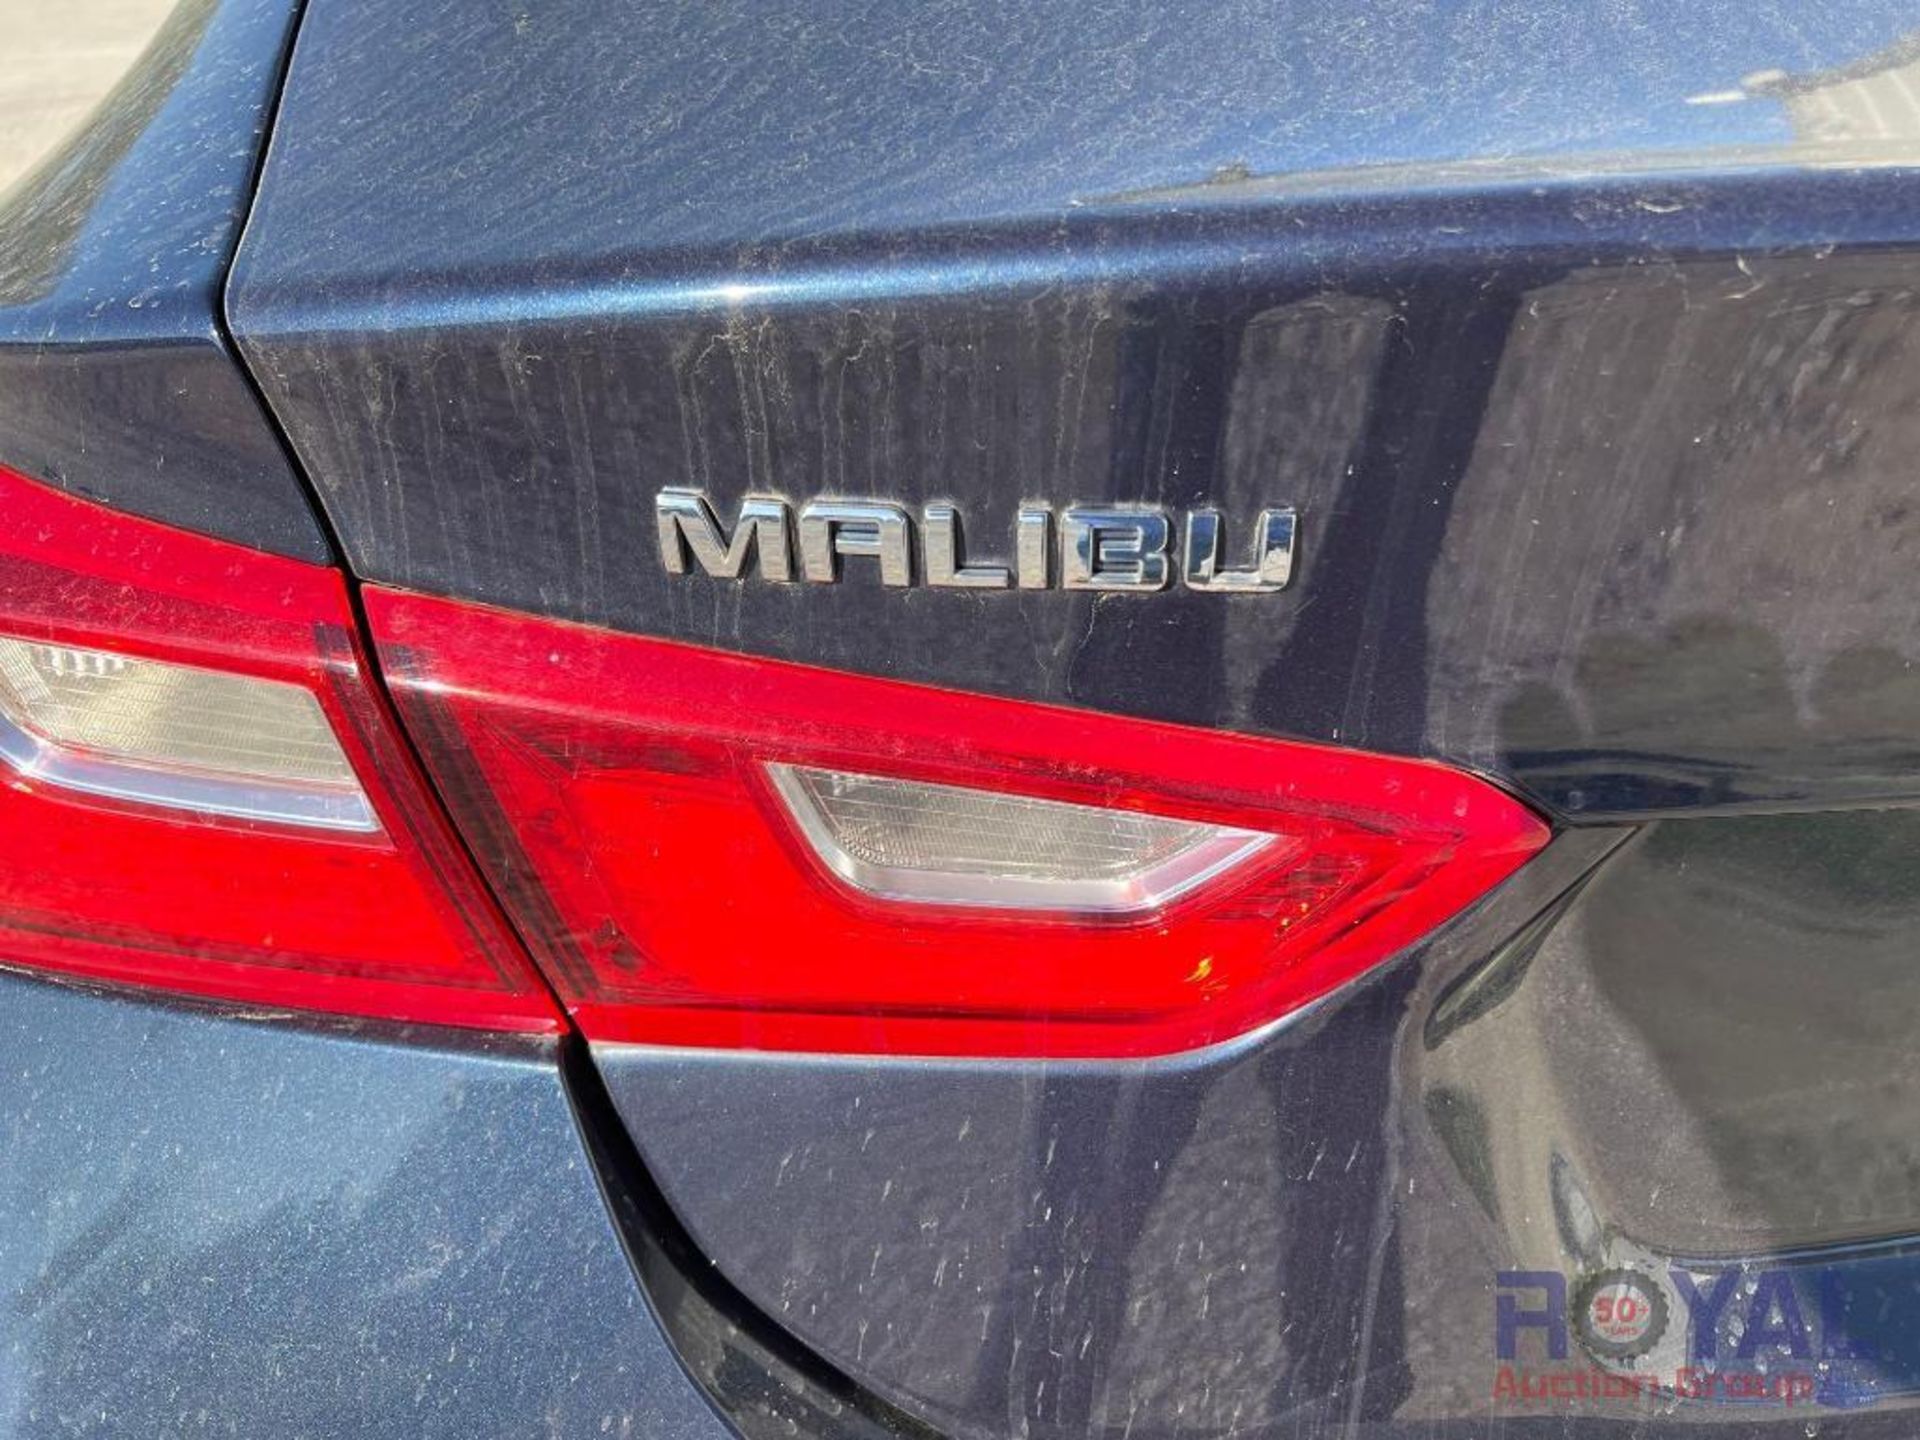 2016 Chevrolet Malibu LS Sedan - Image 46 of 47